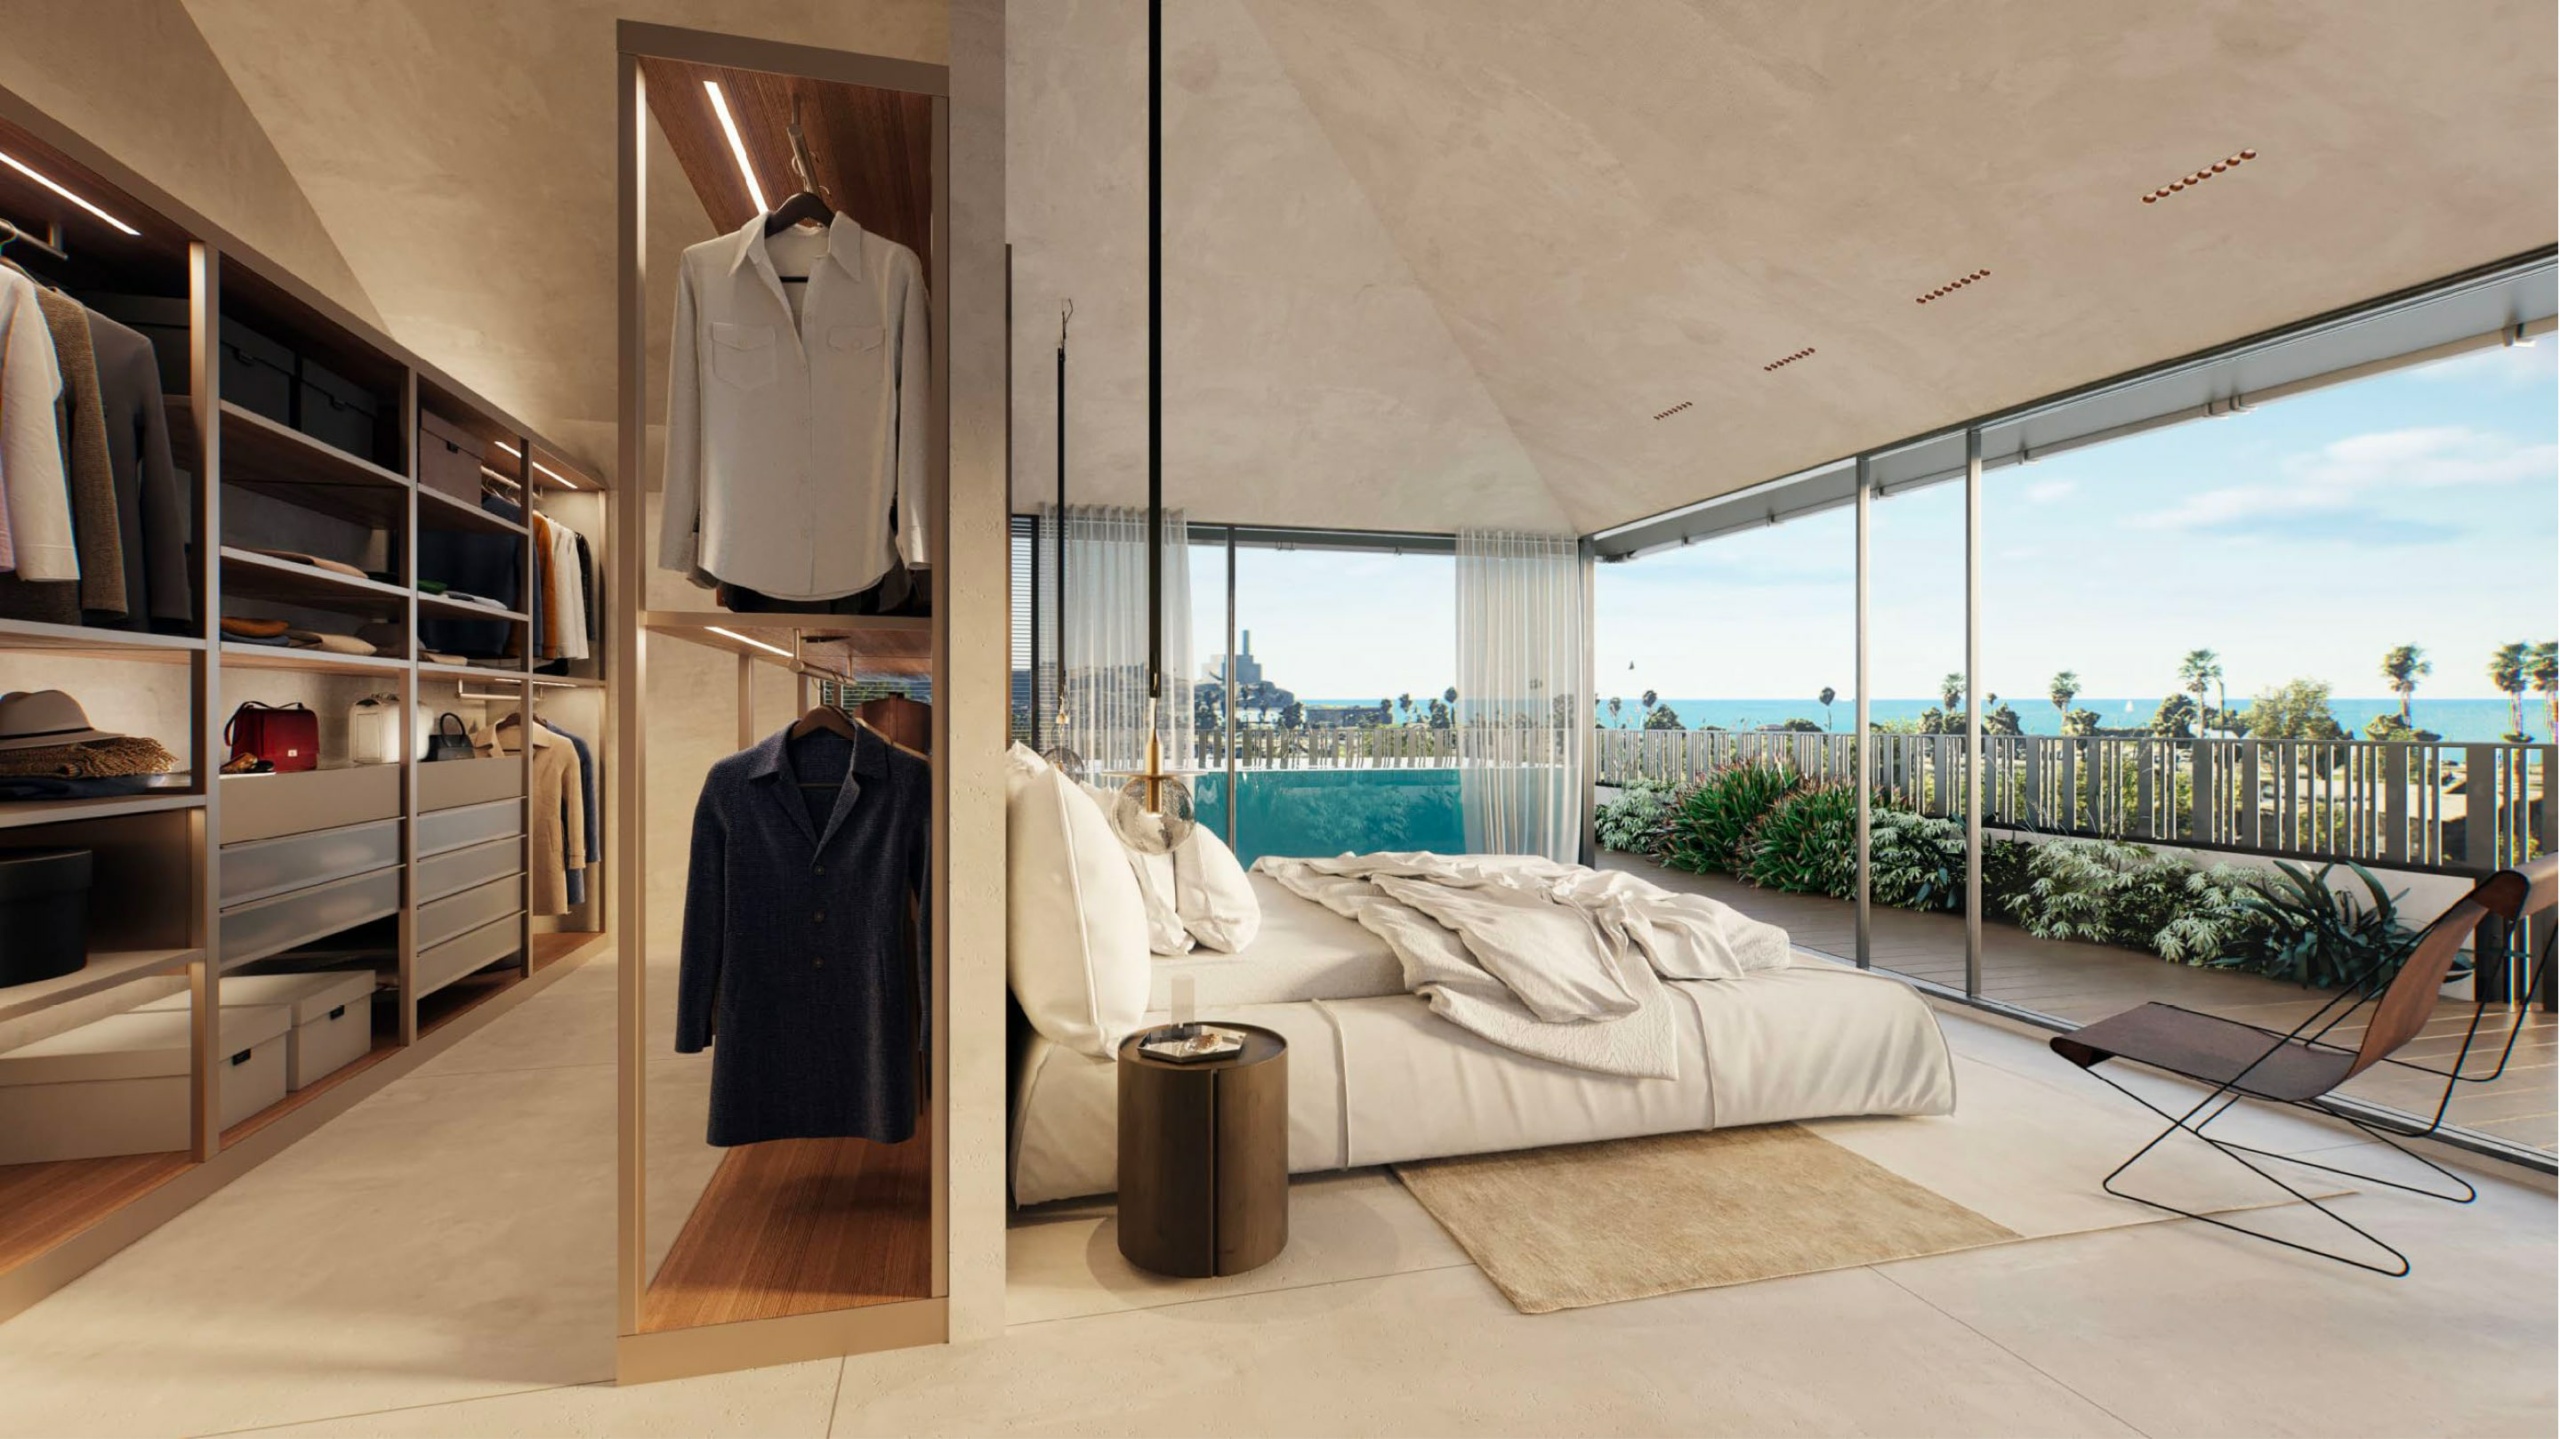 חדר ארונות וחדר שינה עם מרפסת ונוף מדהים לים פרויקט מגורים יוקרתי במתחם הרב קוק